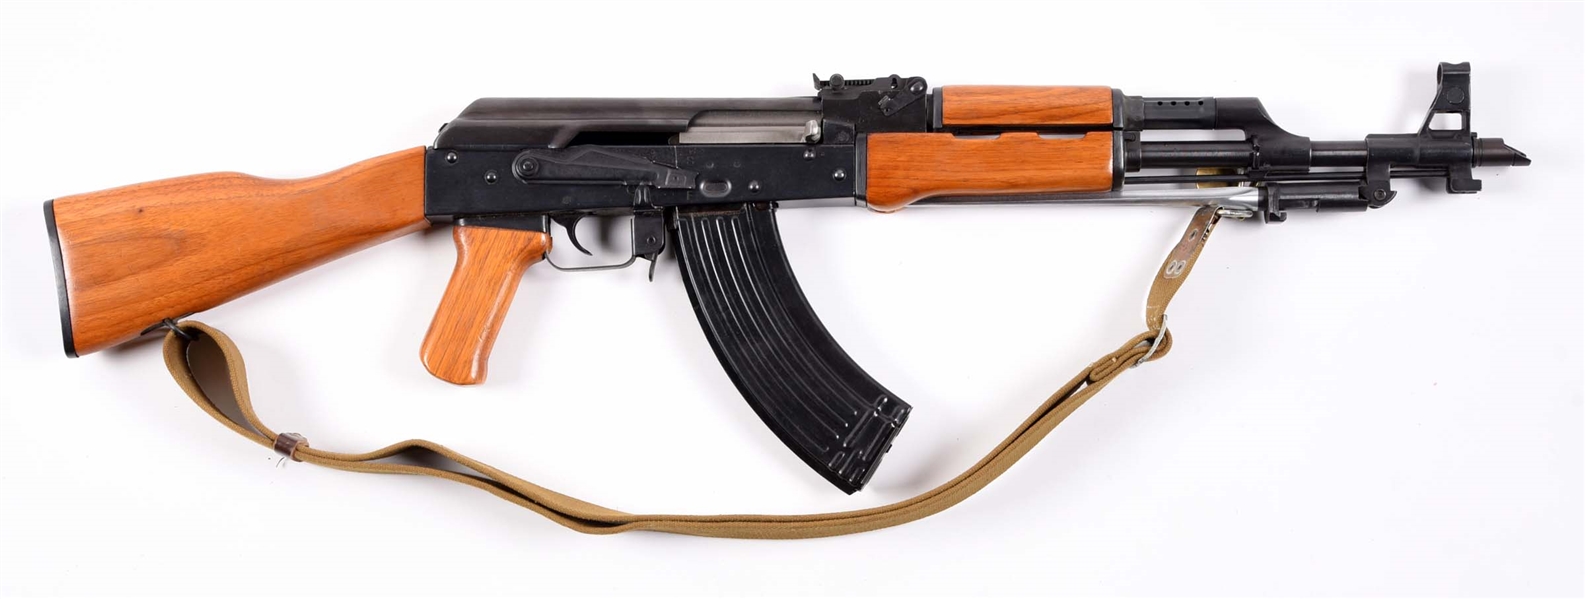 (M) SCARCE PRE-BAN B-WEST AK47S SEMI AUTOMATIC RIFLE.